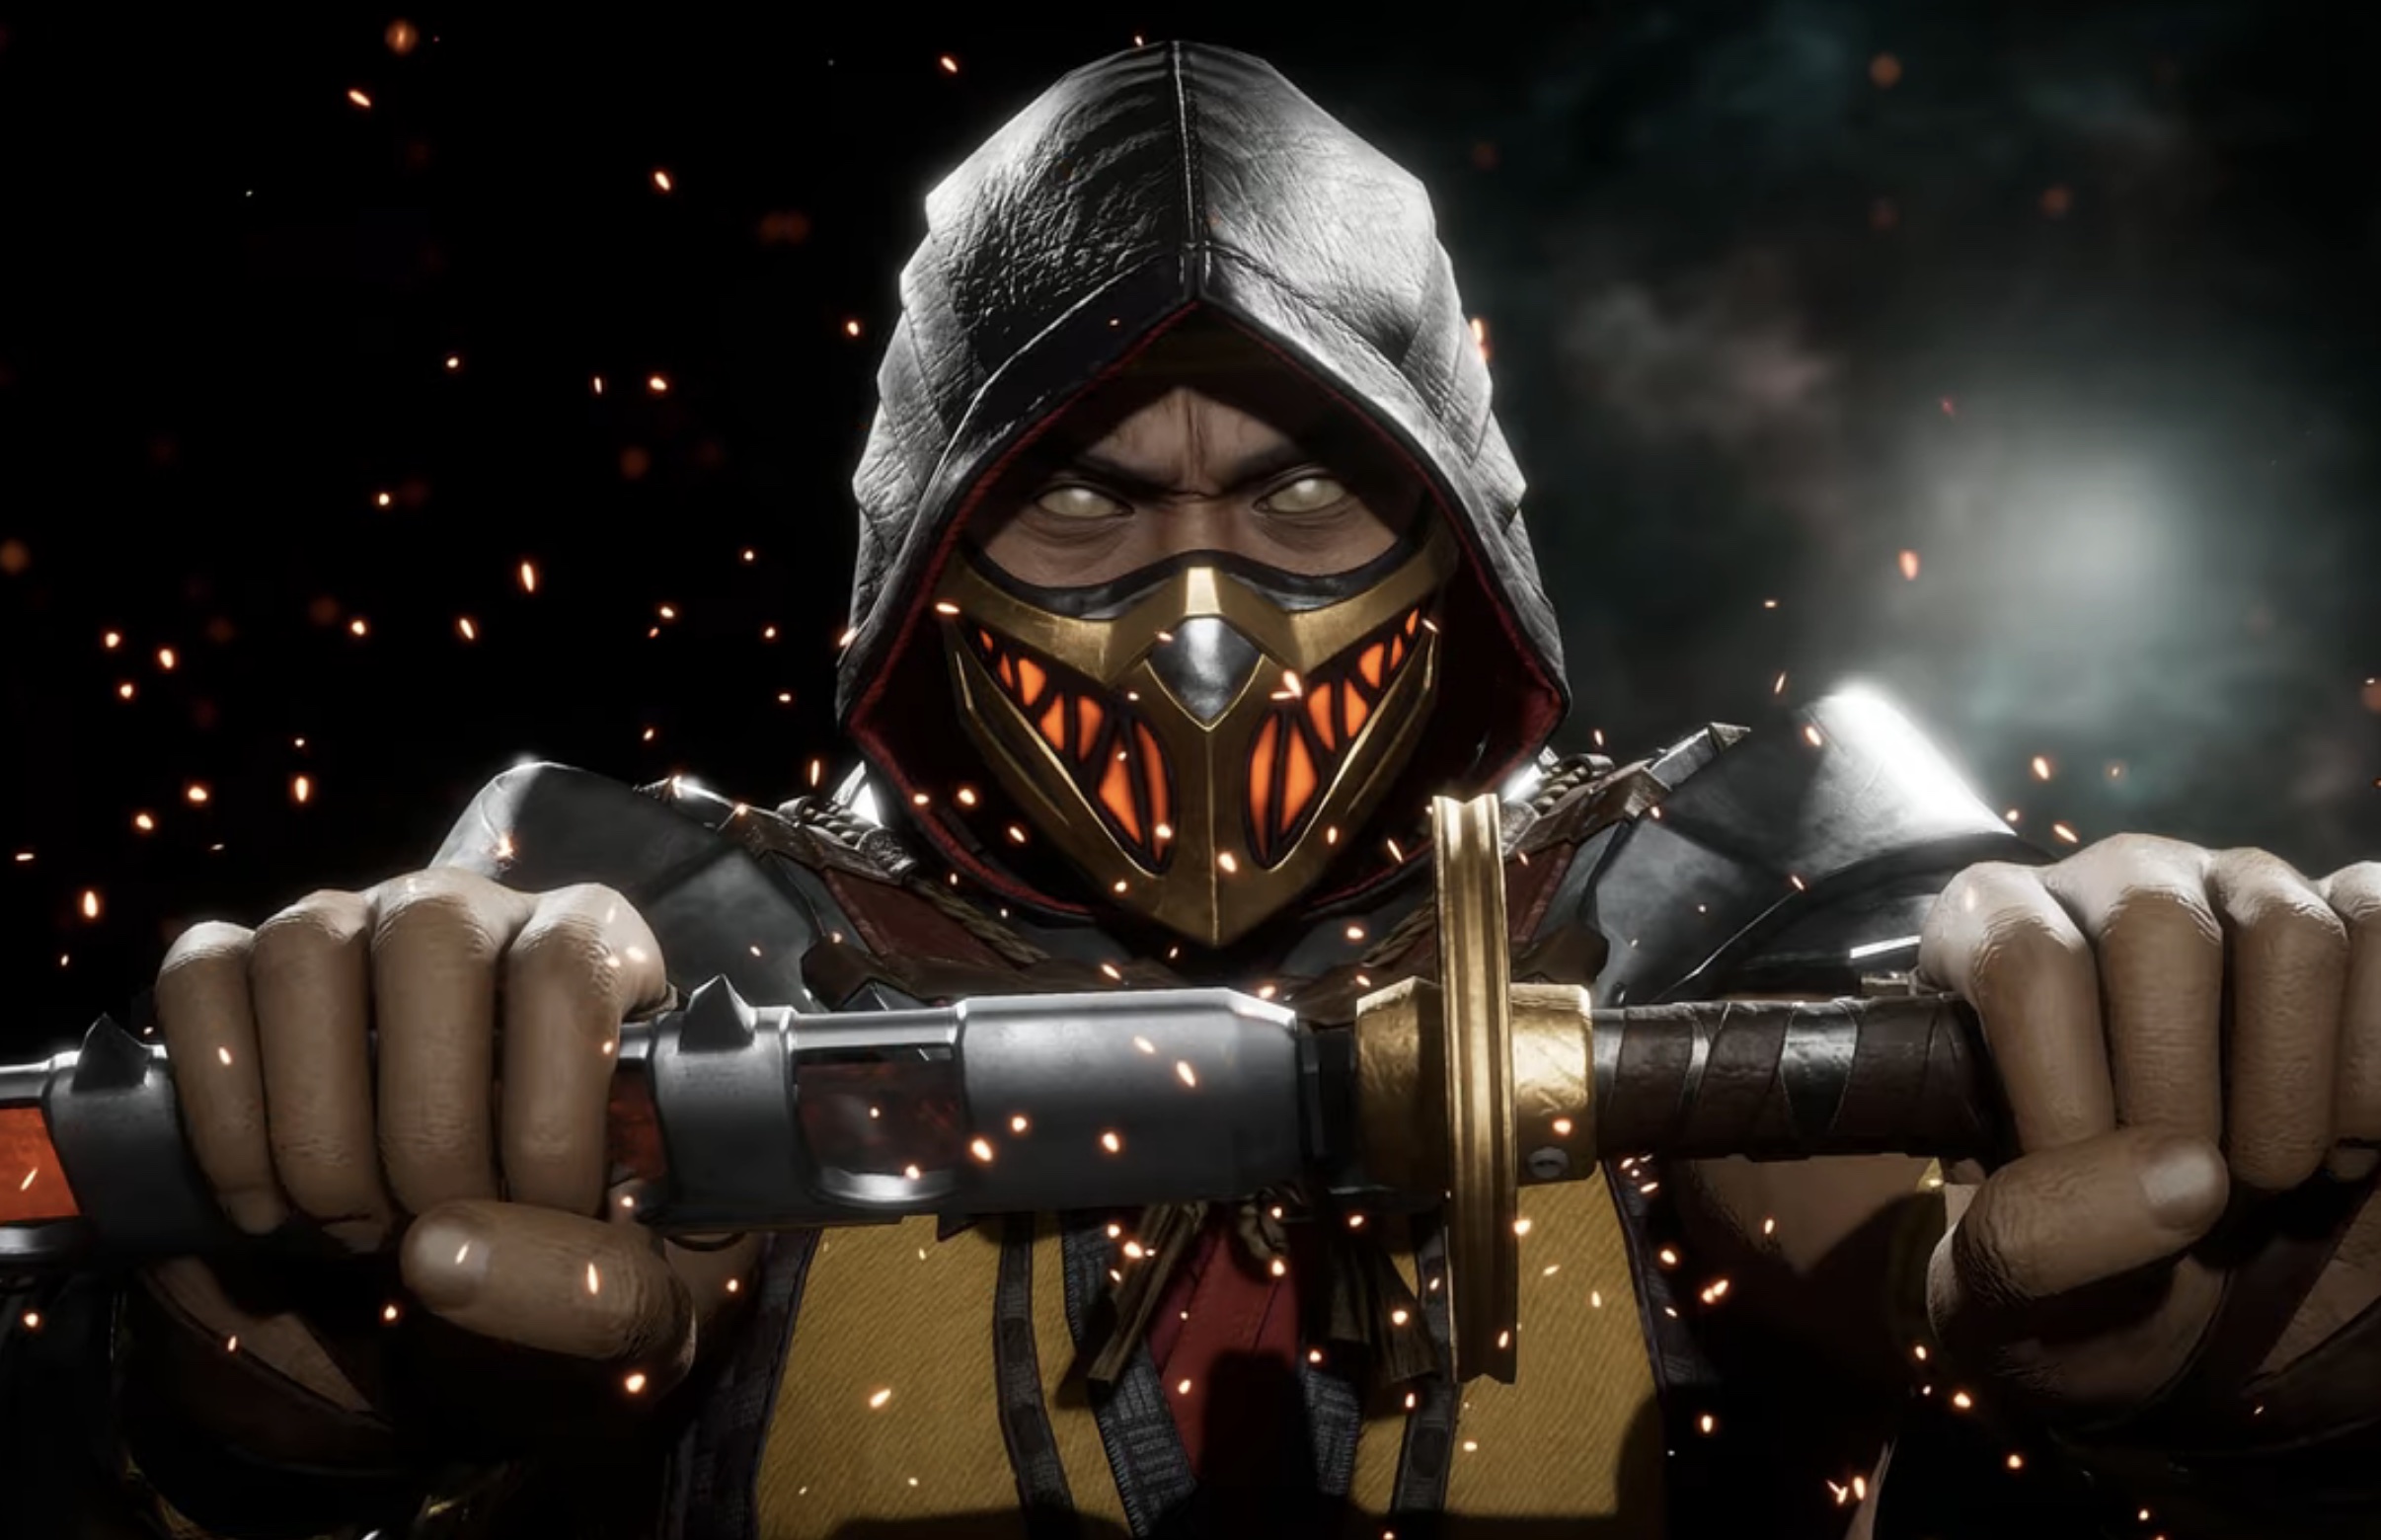 Mortal Kombat 11 - Sub-Zero All Fatalities, Brutality & Fatal Blow